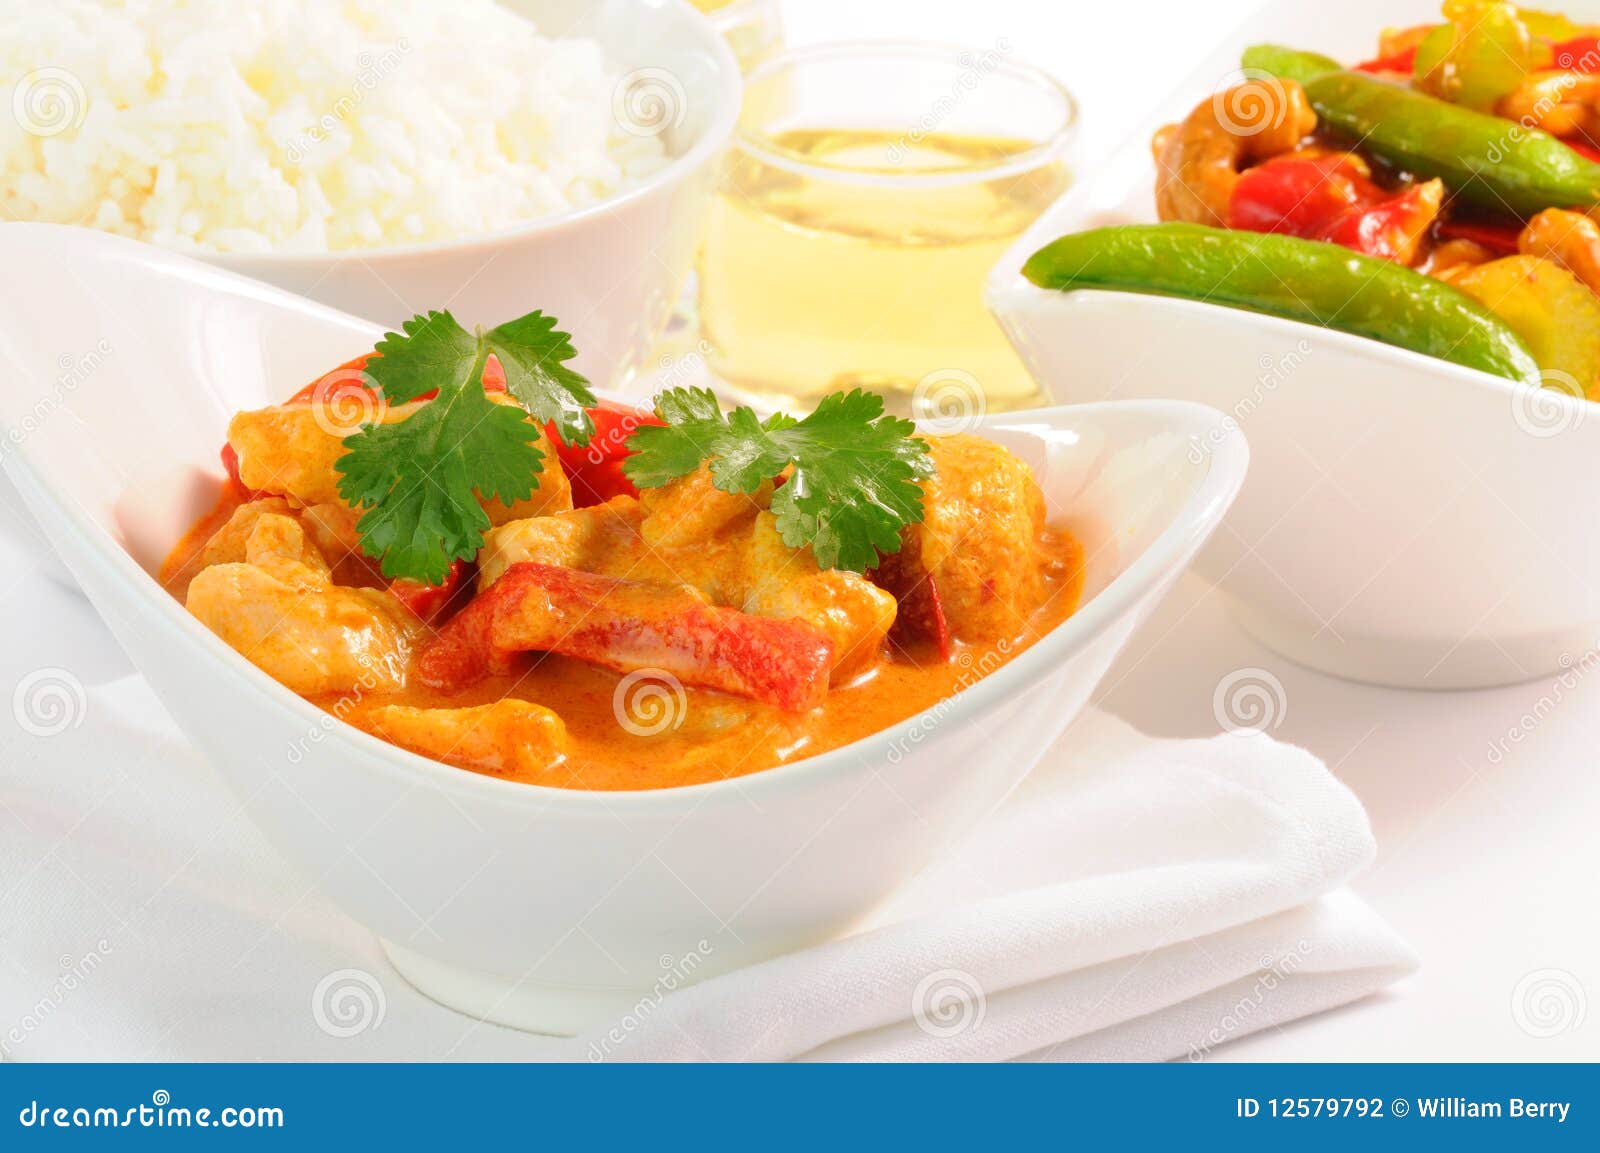 thai curry chicken